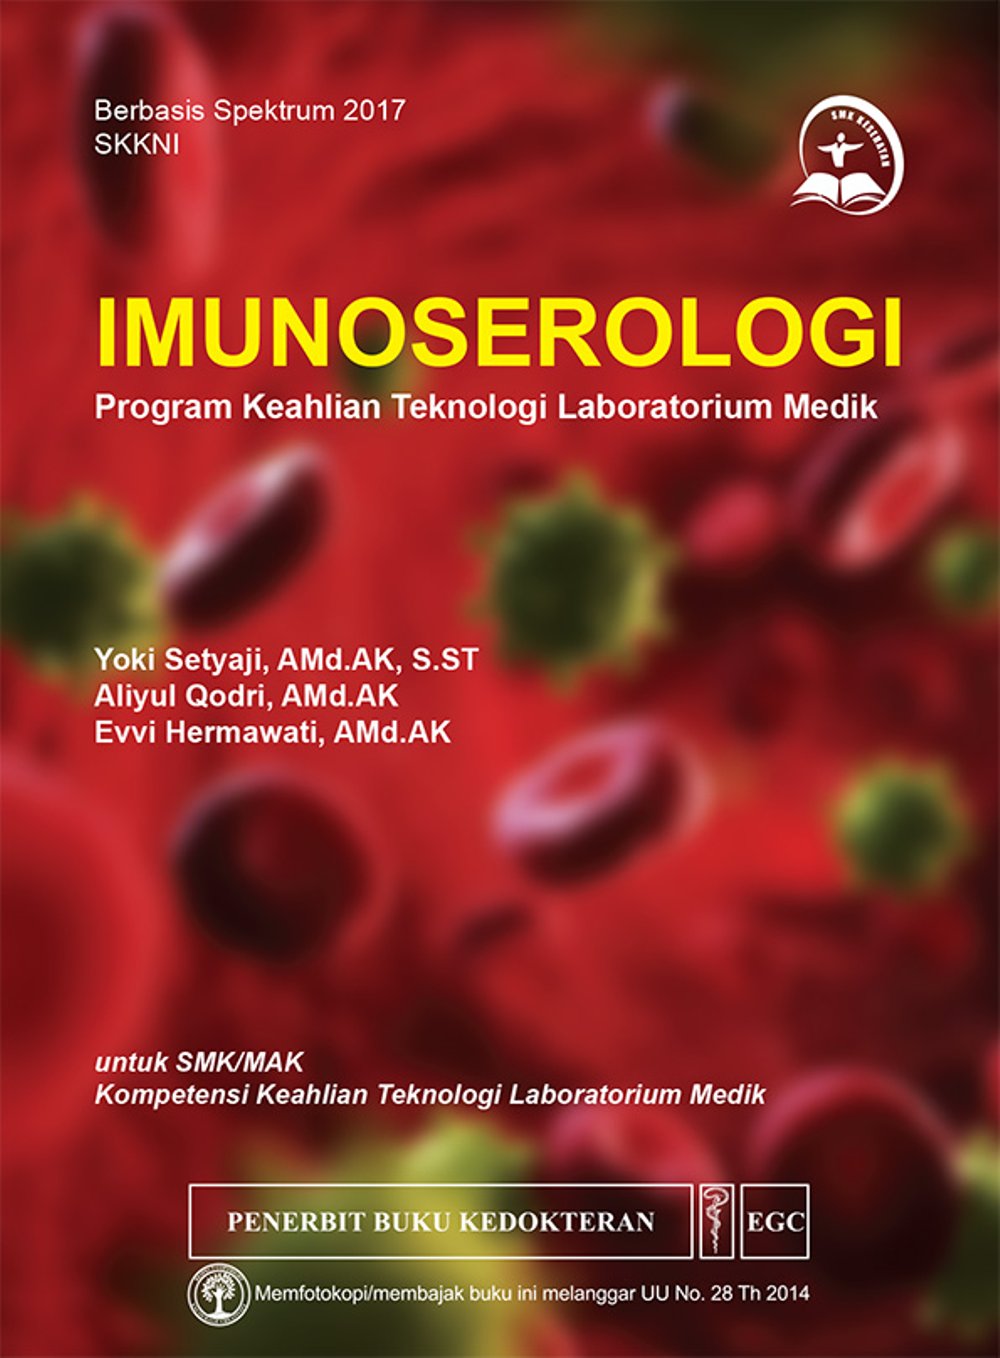 Imunoserologi :  program keahlian teknologi laboratorium medik untuk SMA/MAK